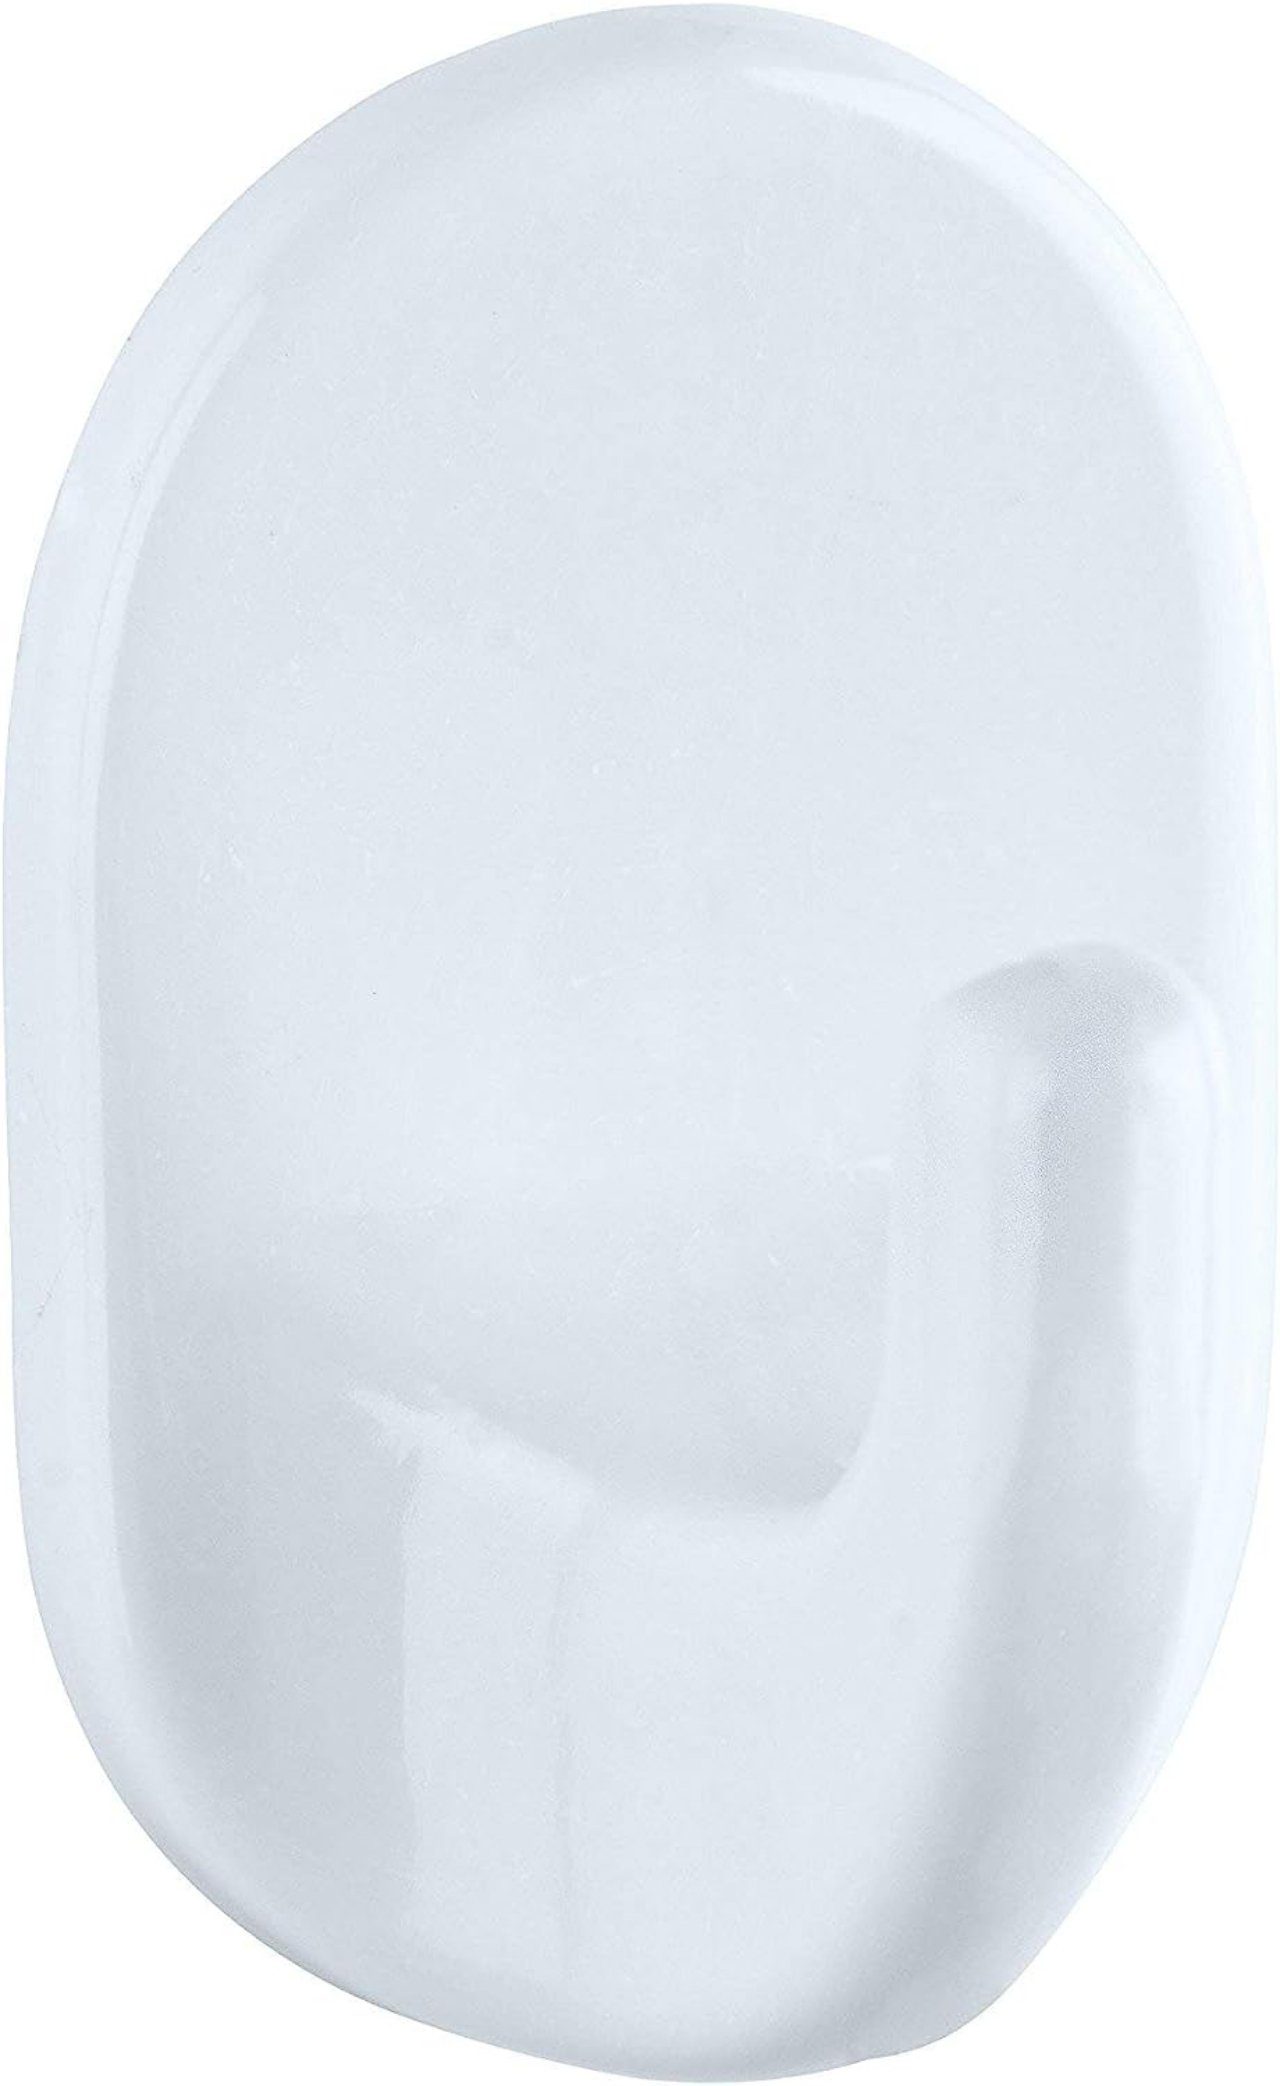 WENKO Drapierhaken, Ovalhaken klein Weiß 3er Set - 3er, Kunststoff, 2 x 3.5  x 2 cm, Weiß